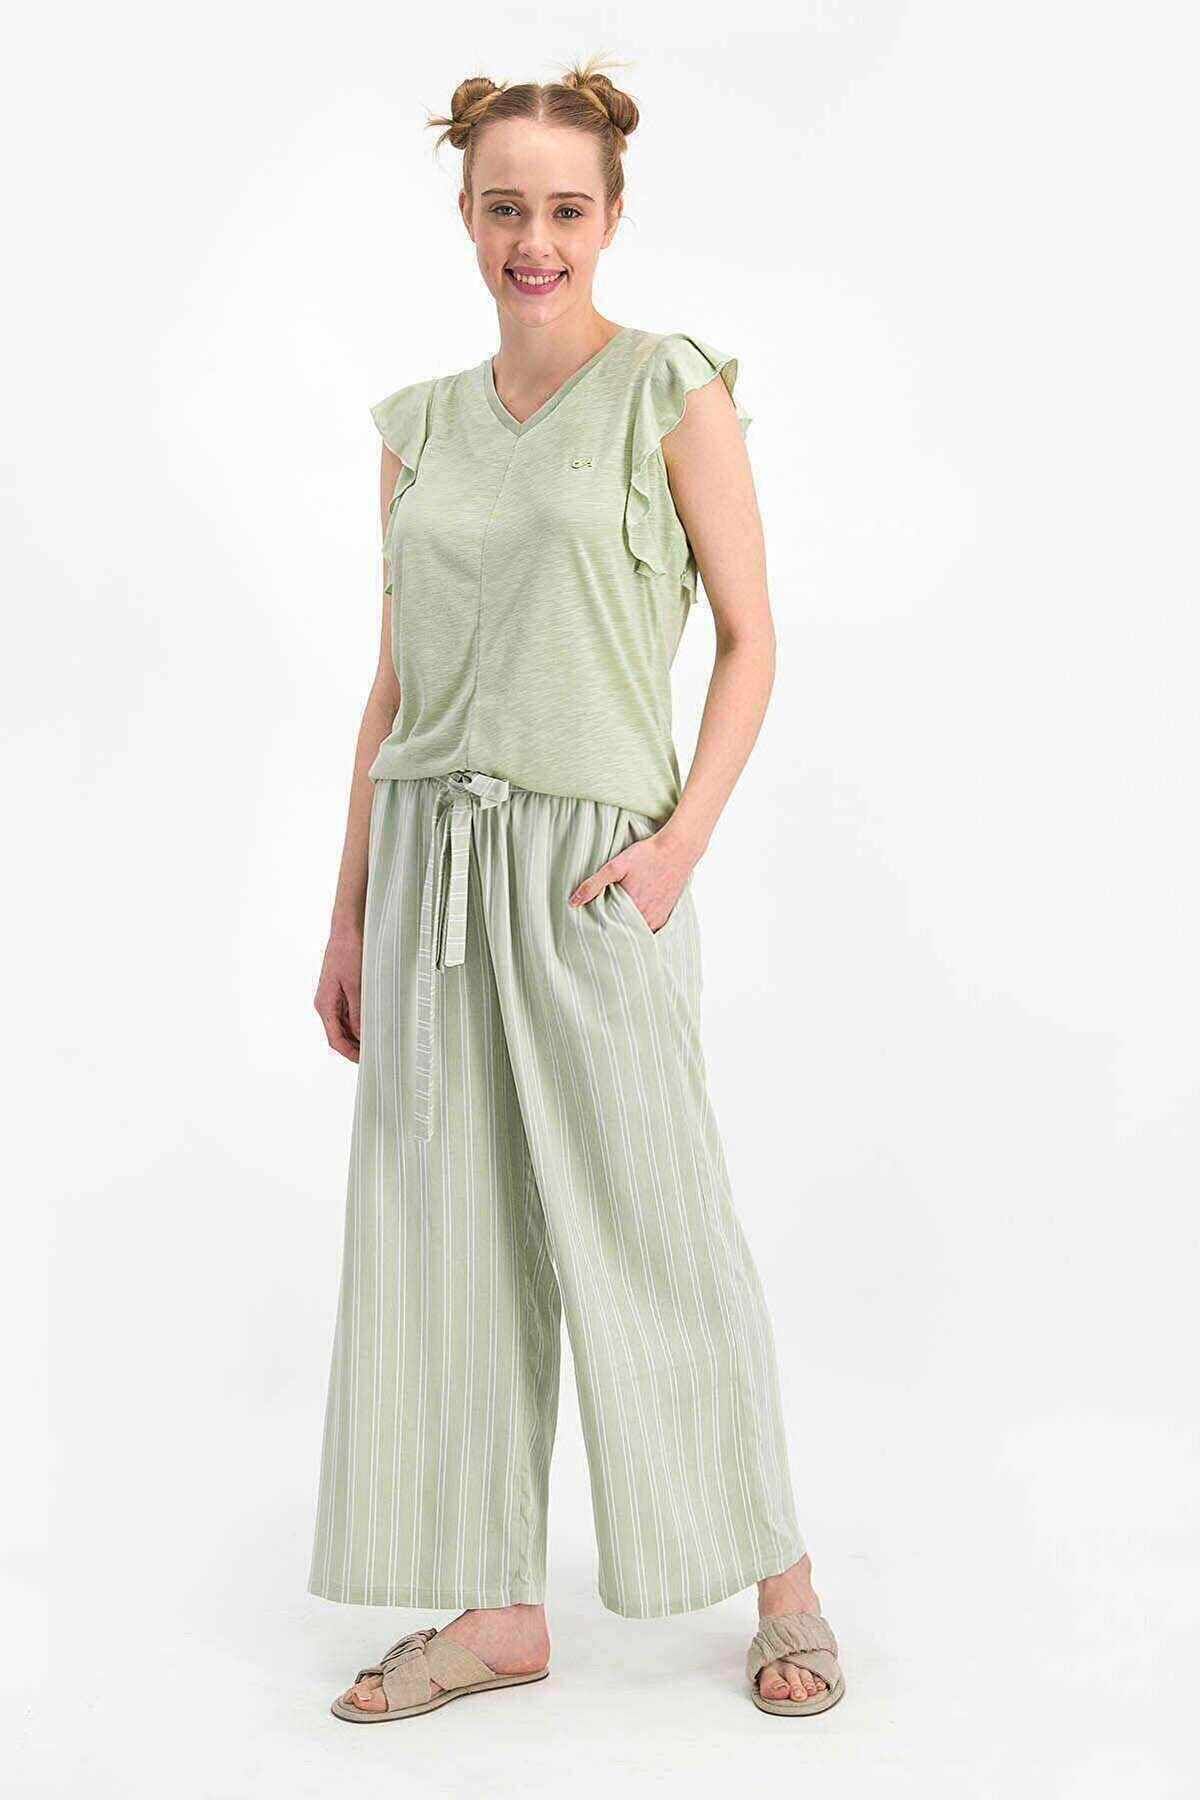 Arnetta Basic Soluk Mint Kadın Kısa Kol Pijama Takımı - Ar1262-s